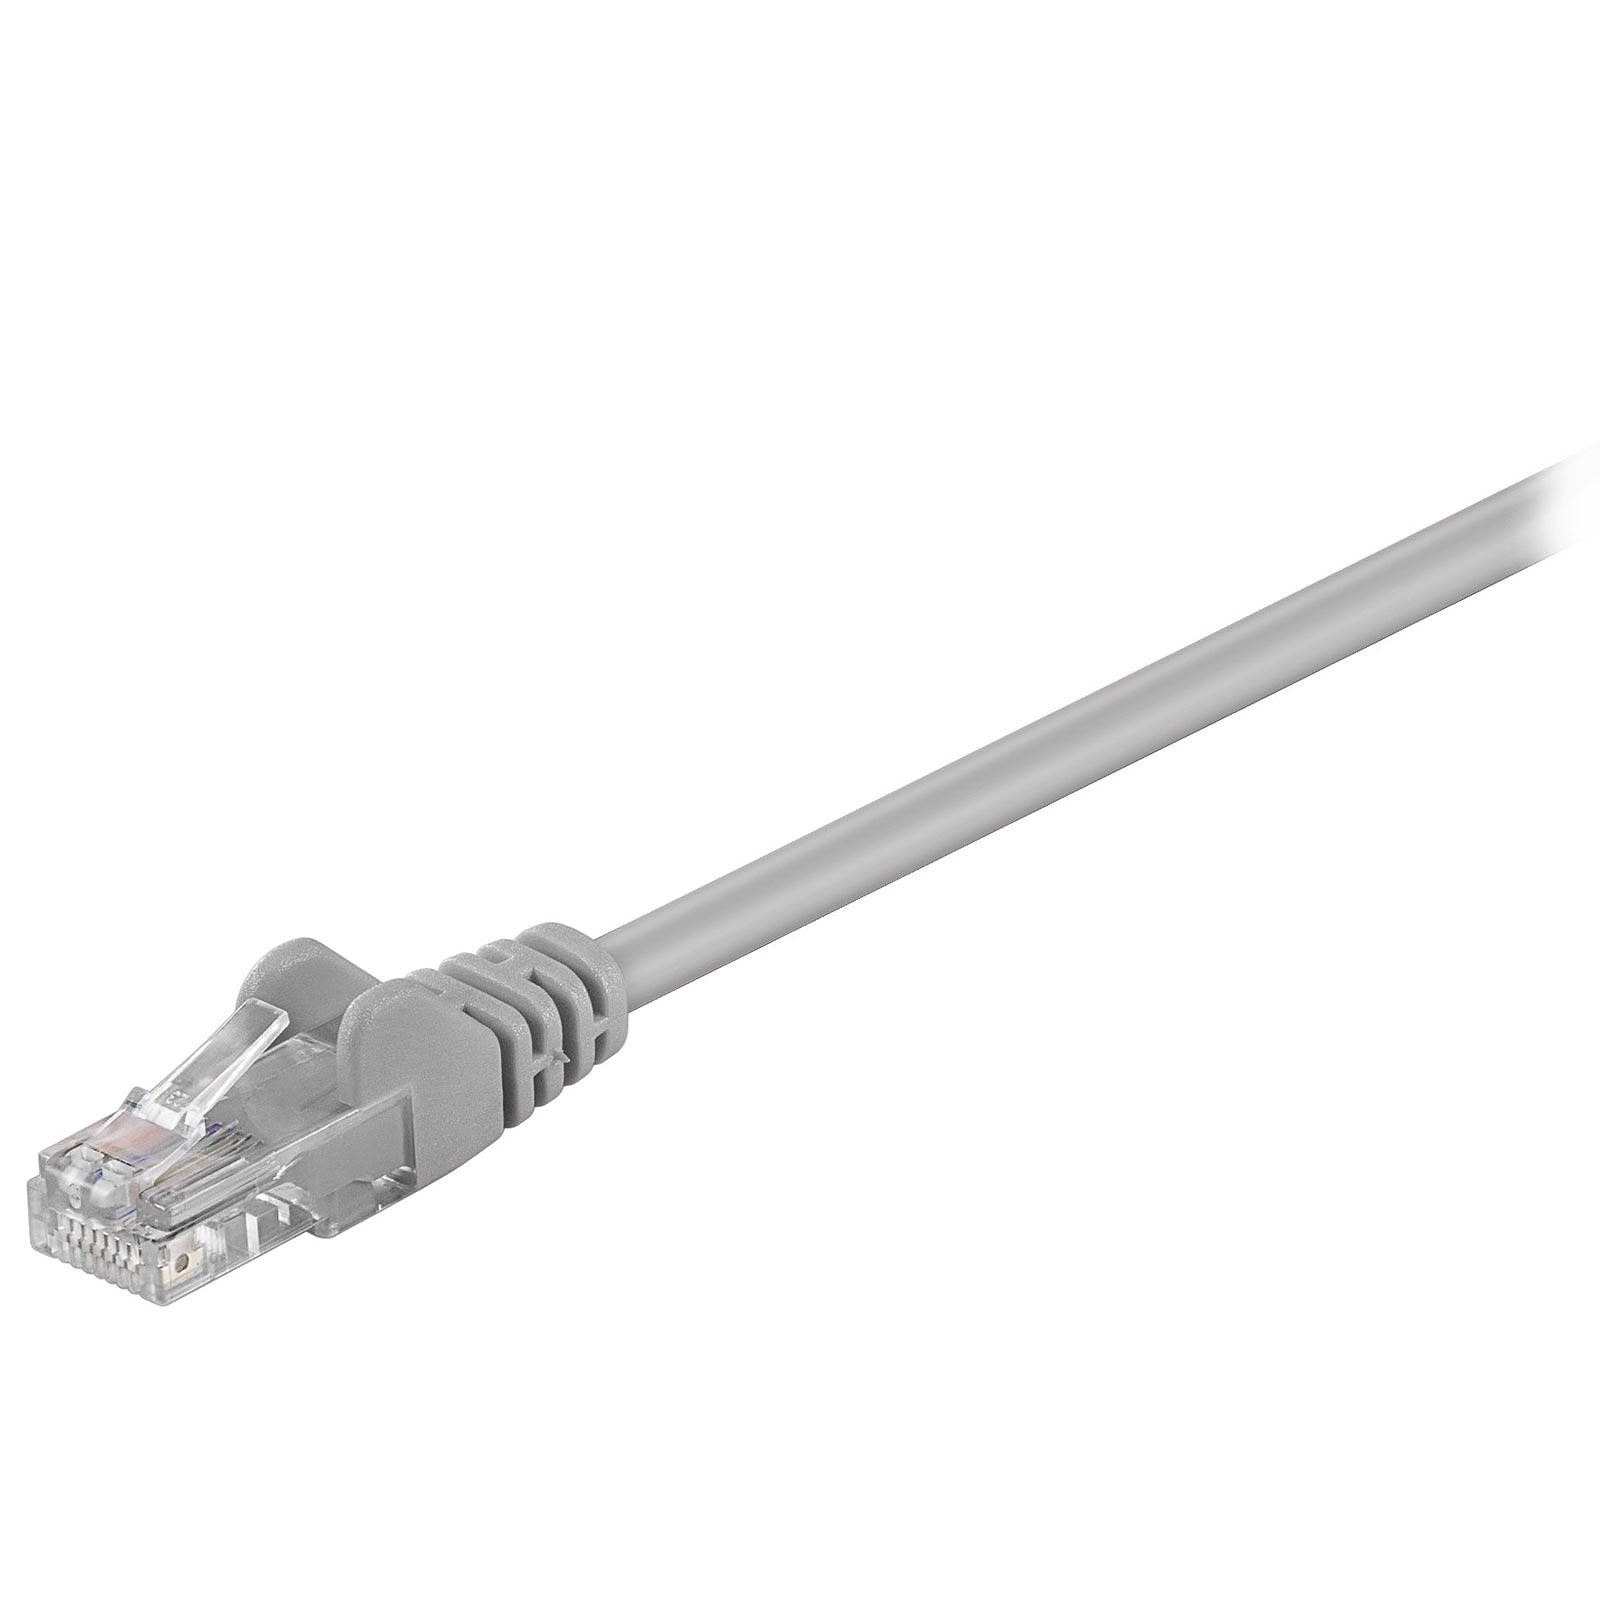 Cable RJ45 categorie 5e U/UTP 0.5 m (Gris) - Cable RJ45 Generique